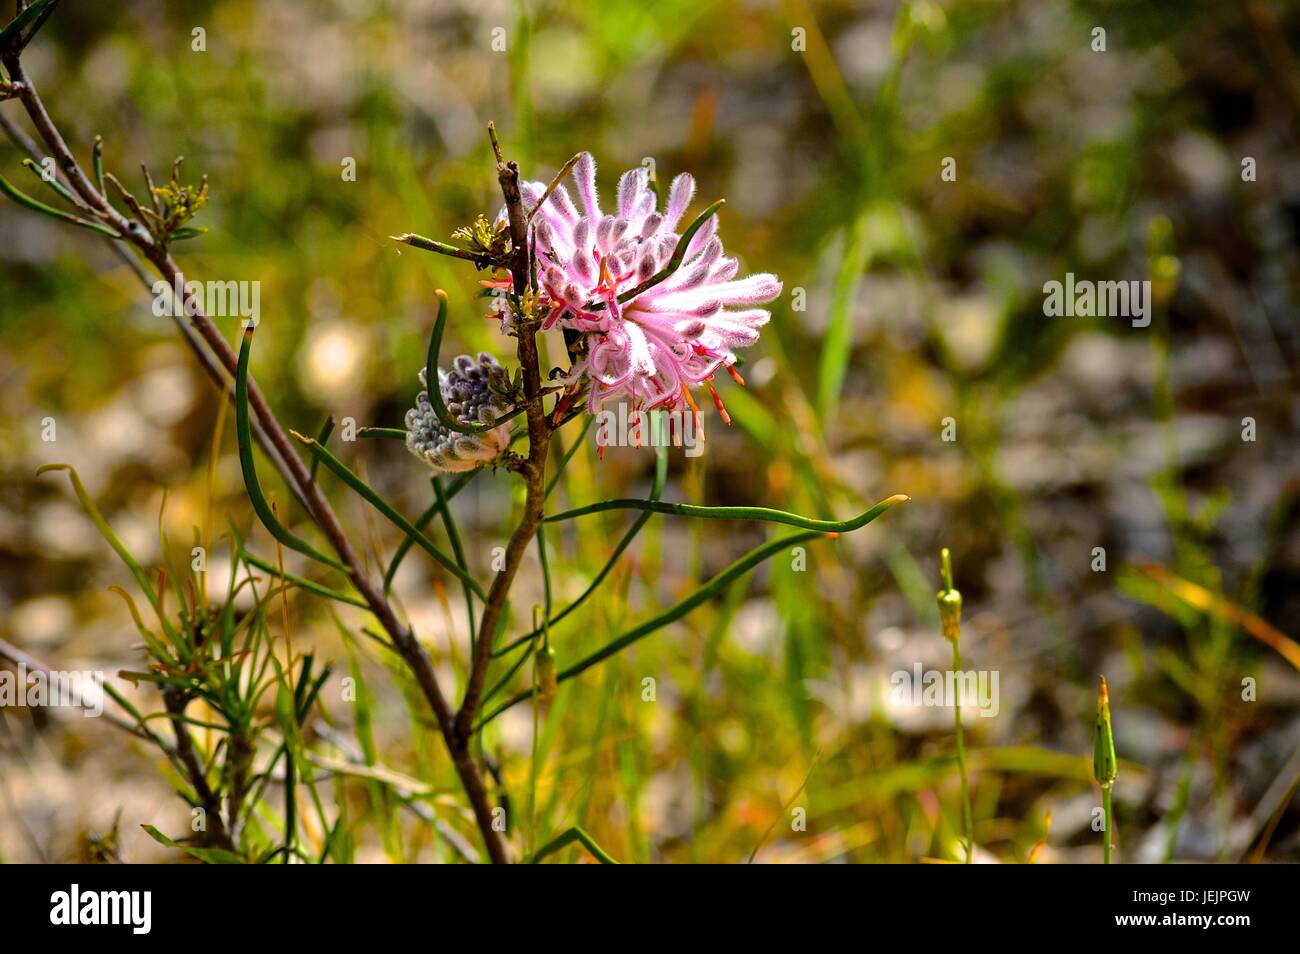 Pink native WA flower Stock Photo